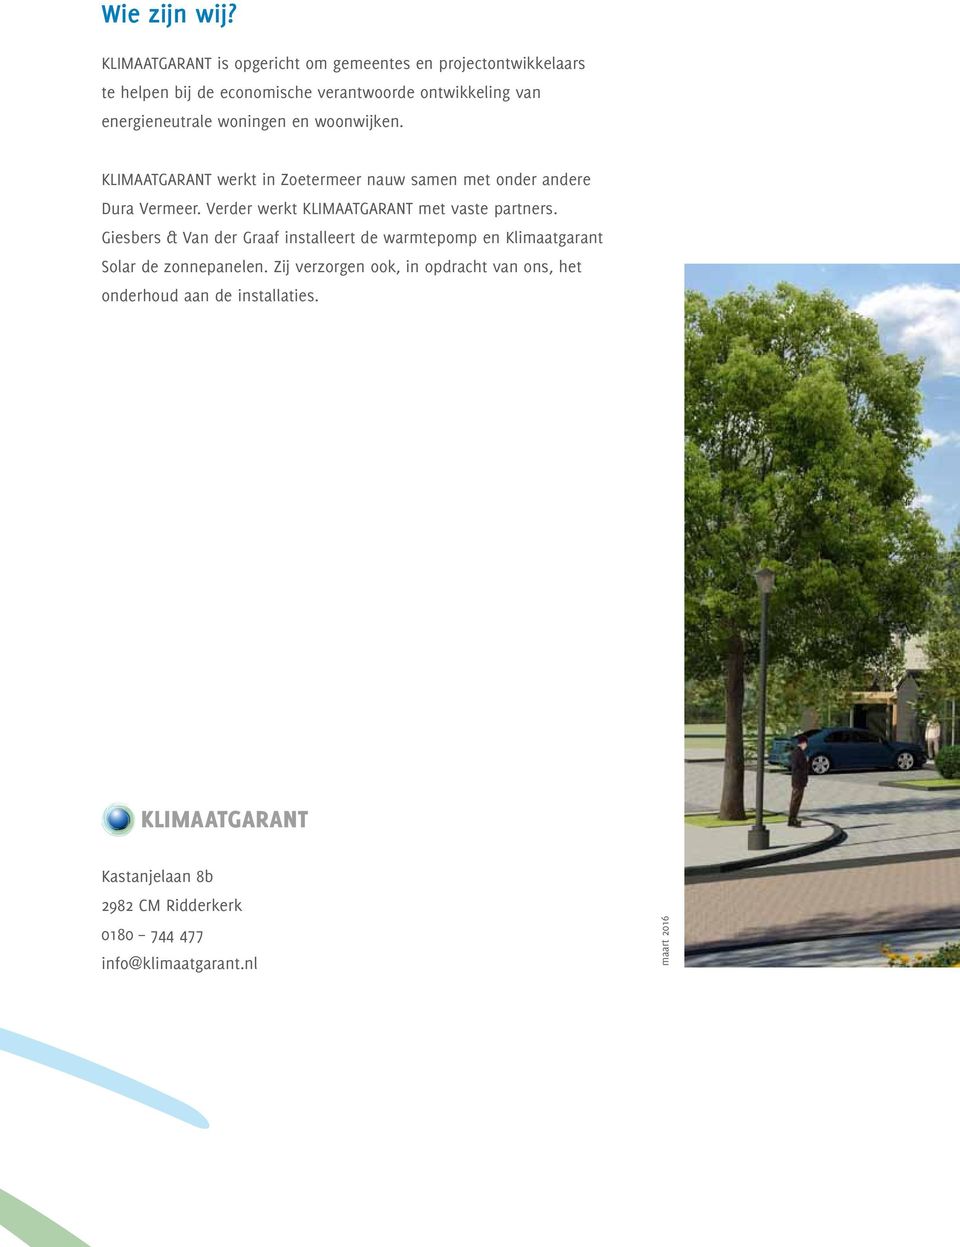 woningen en woonwijken. KLIMAATGARANT werkt in Zoetermeer nauw samen met onder andere Dura Vermeer.